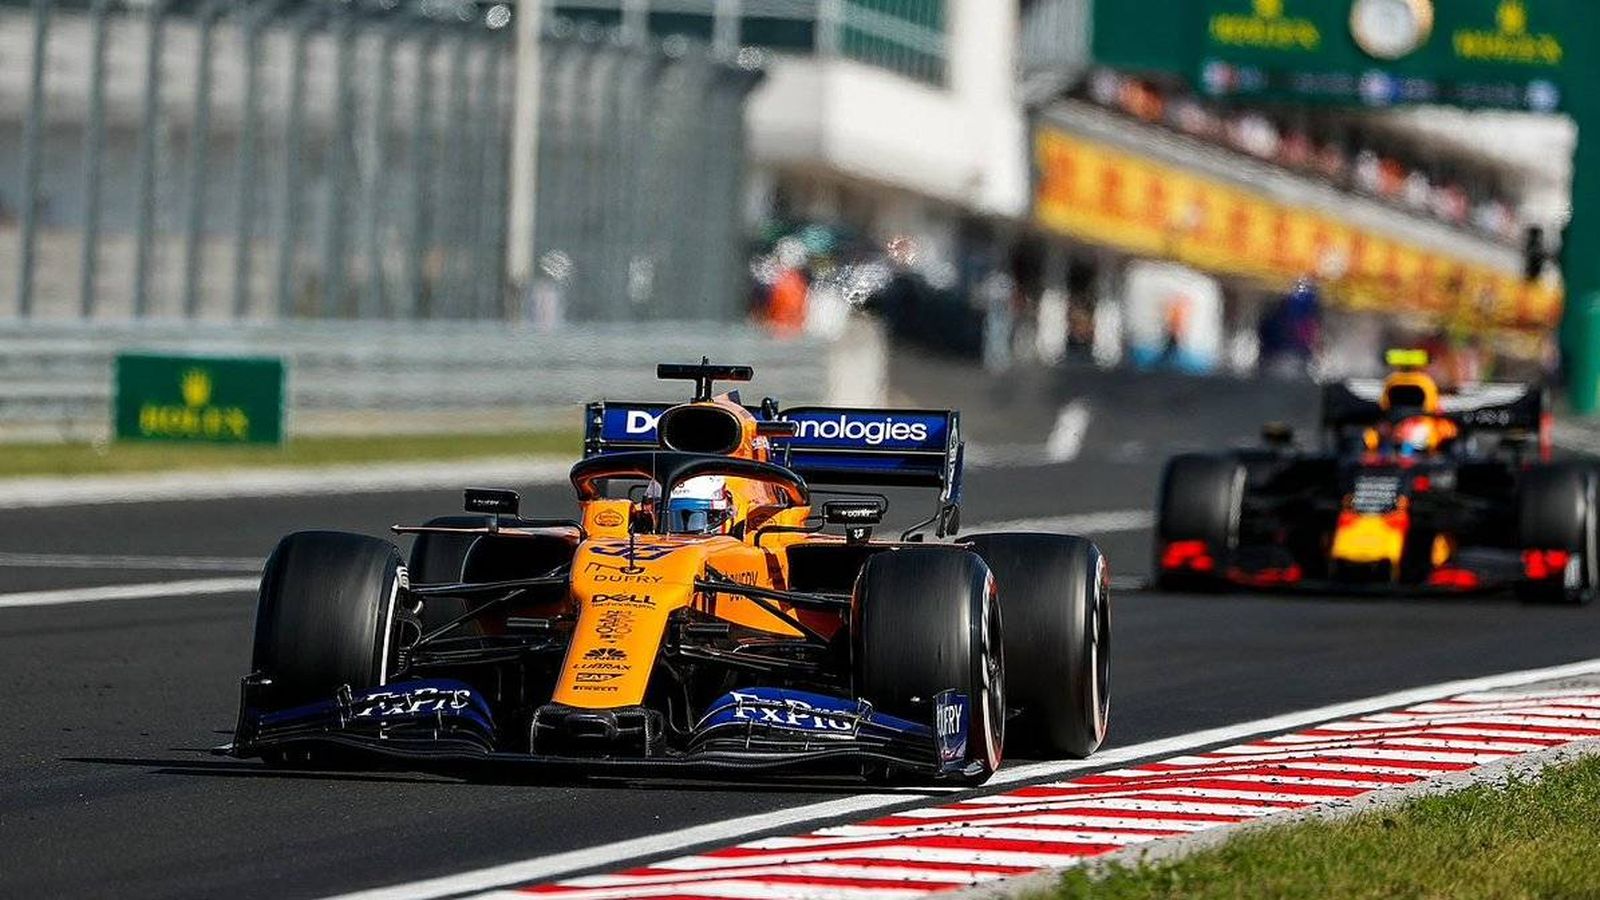 Foto: Carlos Sainz terminó quinto tras superar al Red Bull de Gasly, a quien dejó atrás toda la carrera. (McLaren)